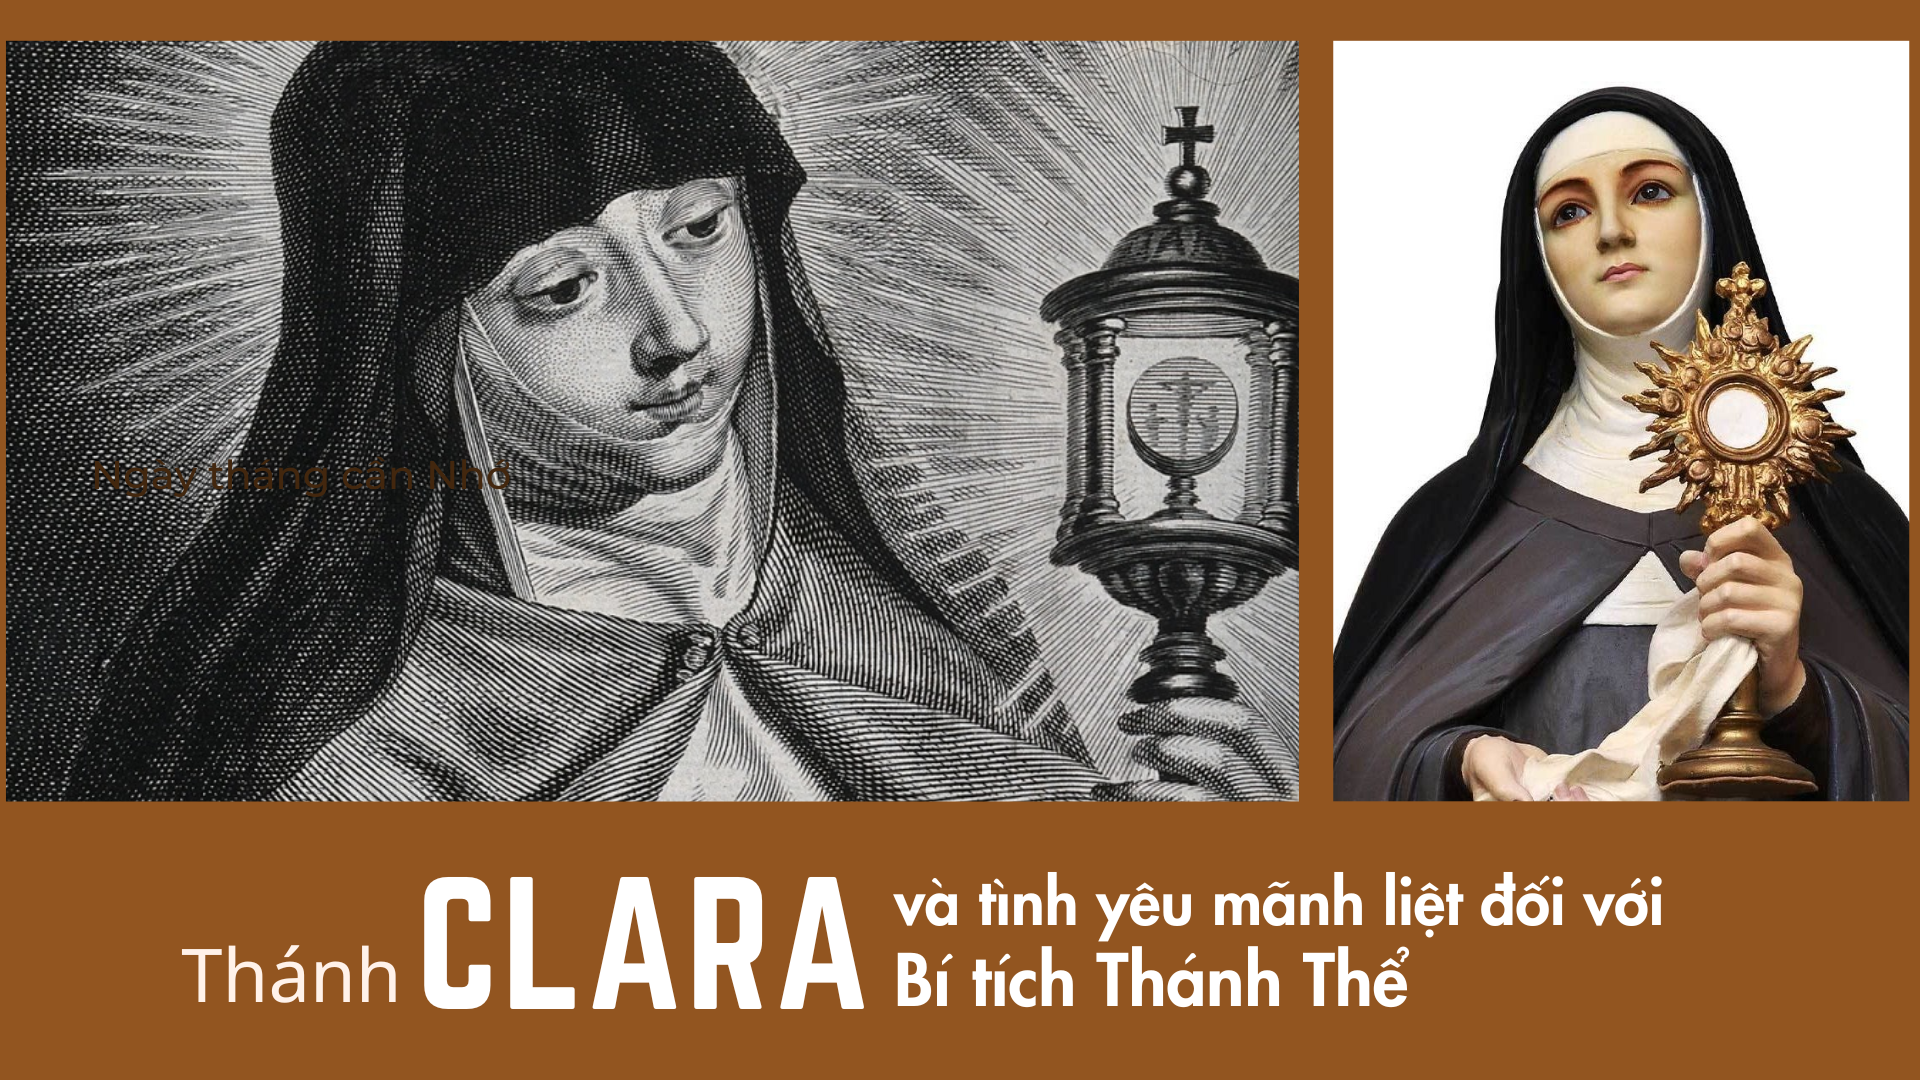 Thánh Clara và tình yêu mãnh liệt đối với Bí tích Thánh Thể